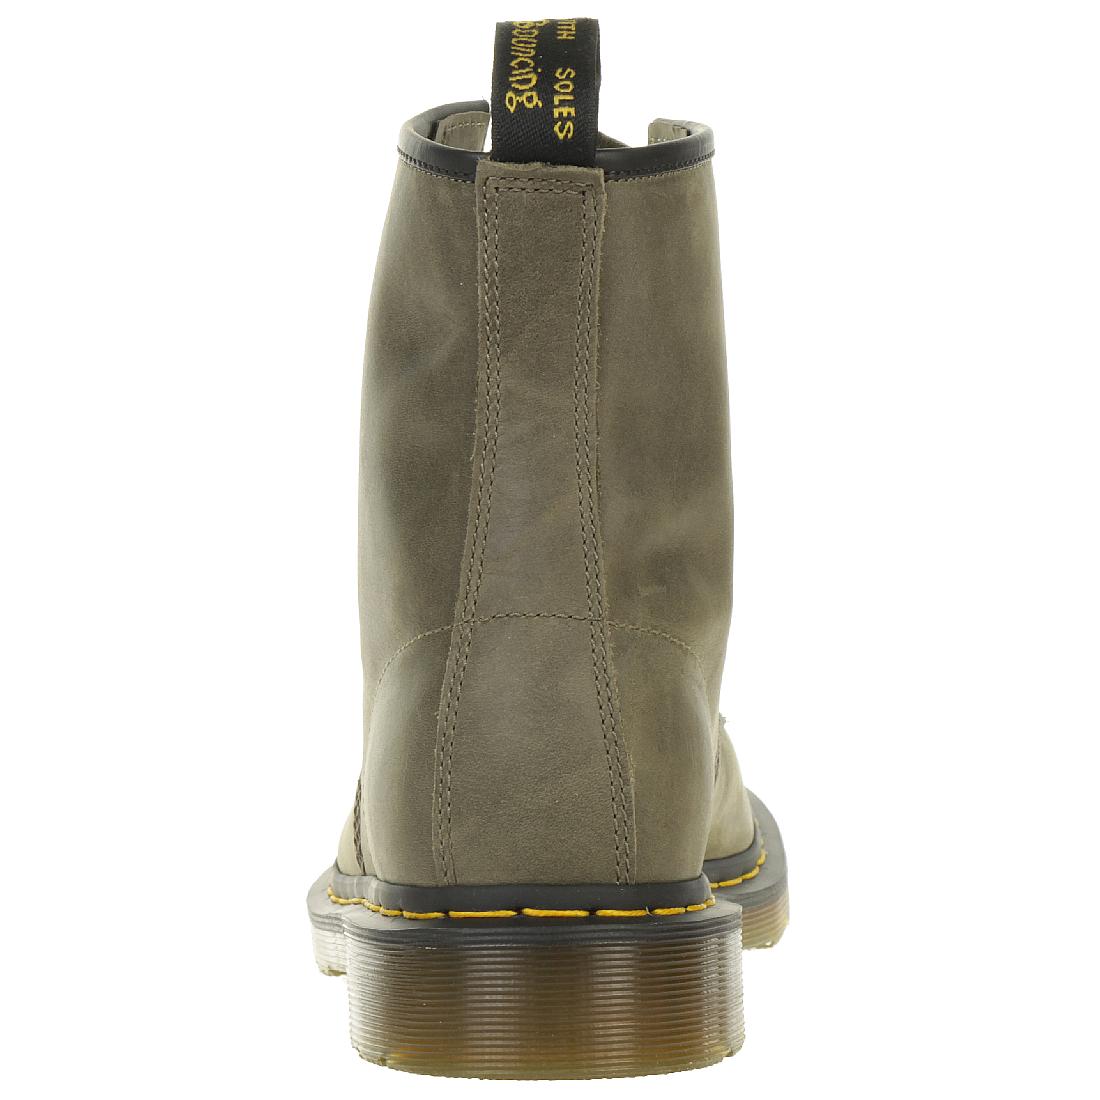 Dr. Martens 1460 Dusky Olive Unisex Stiefel Boots grün 24540305